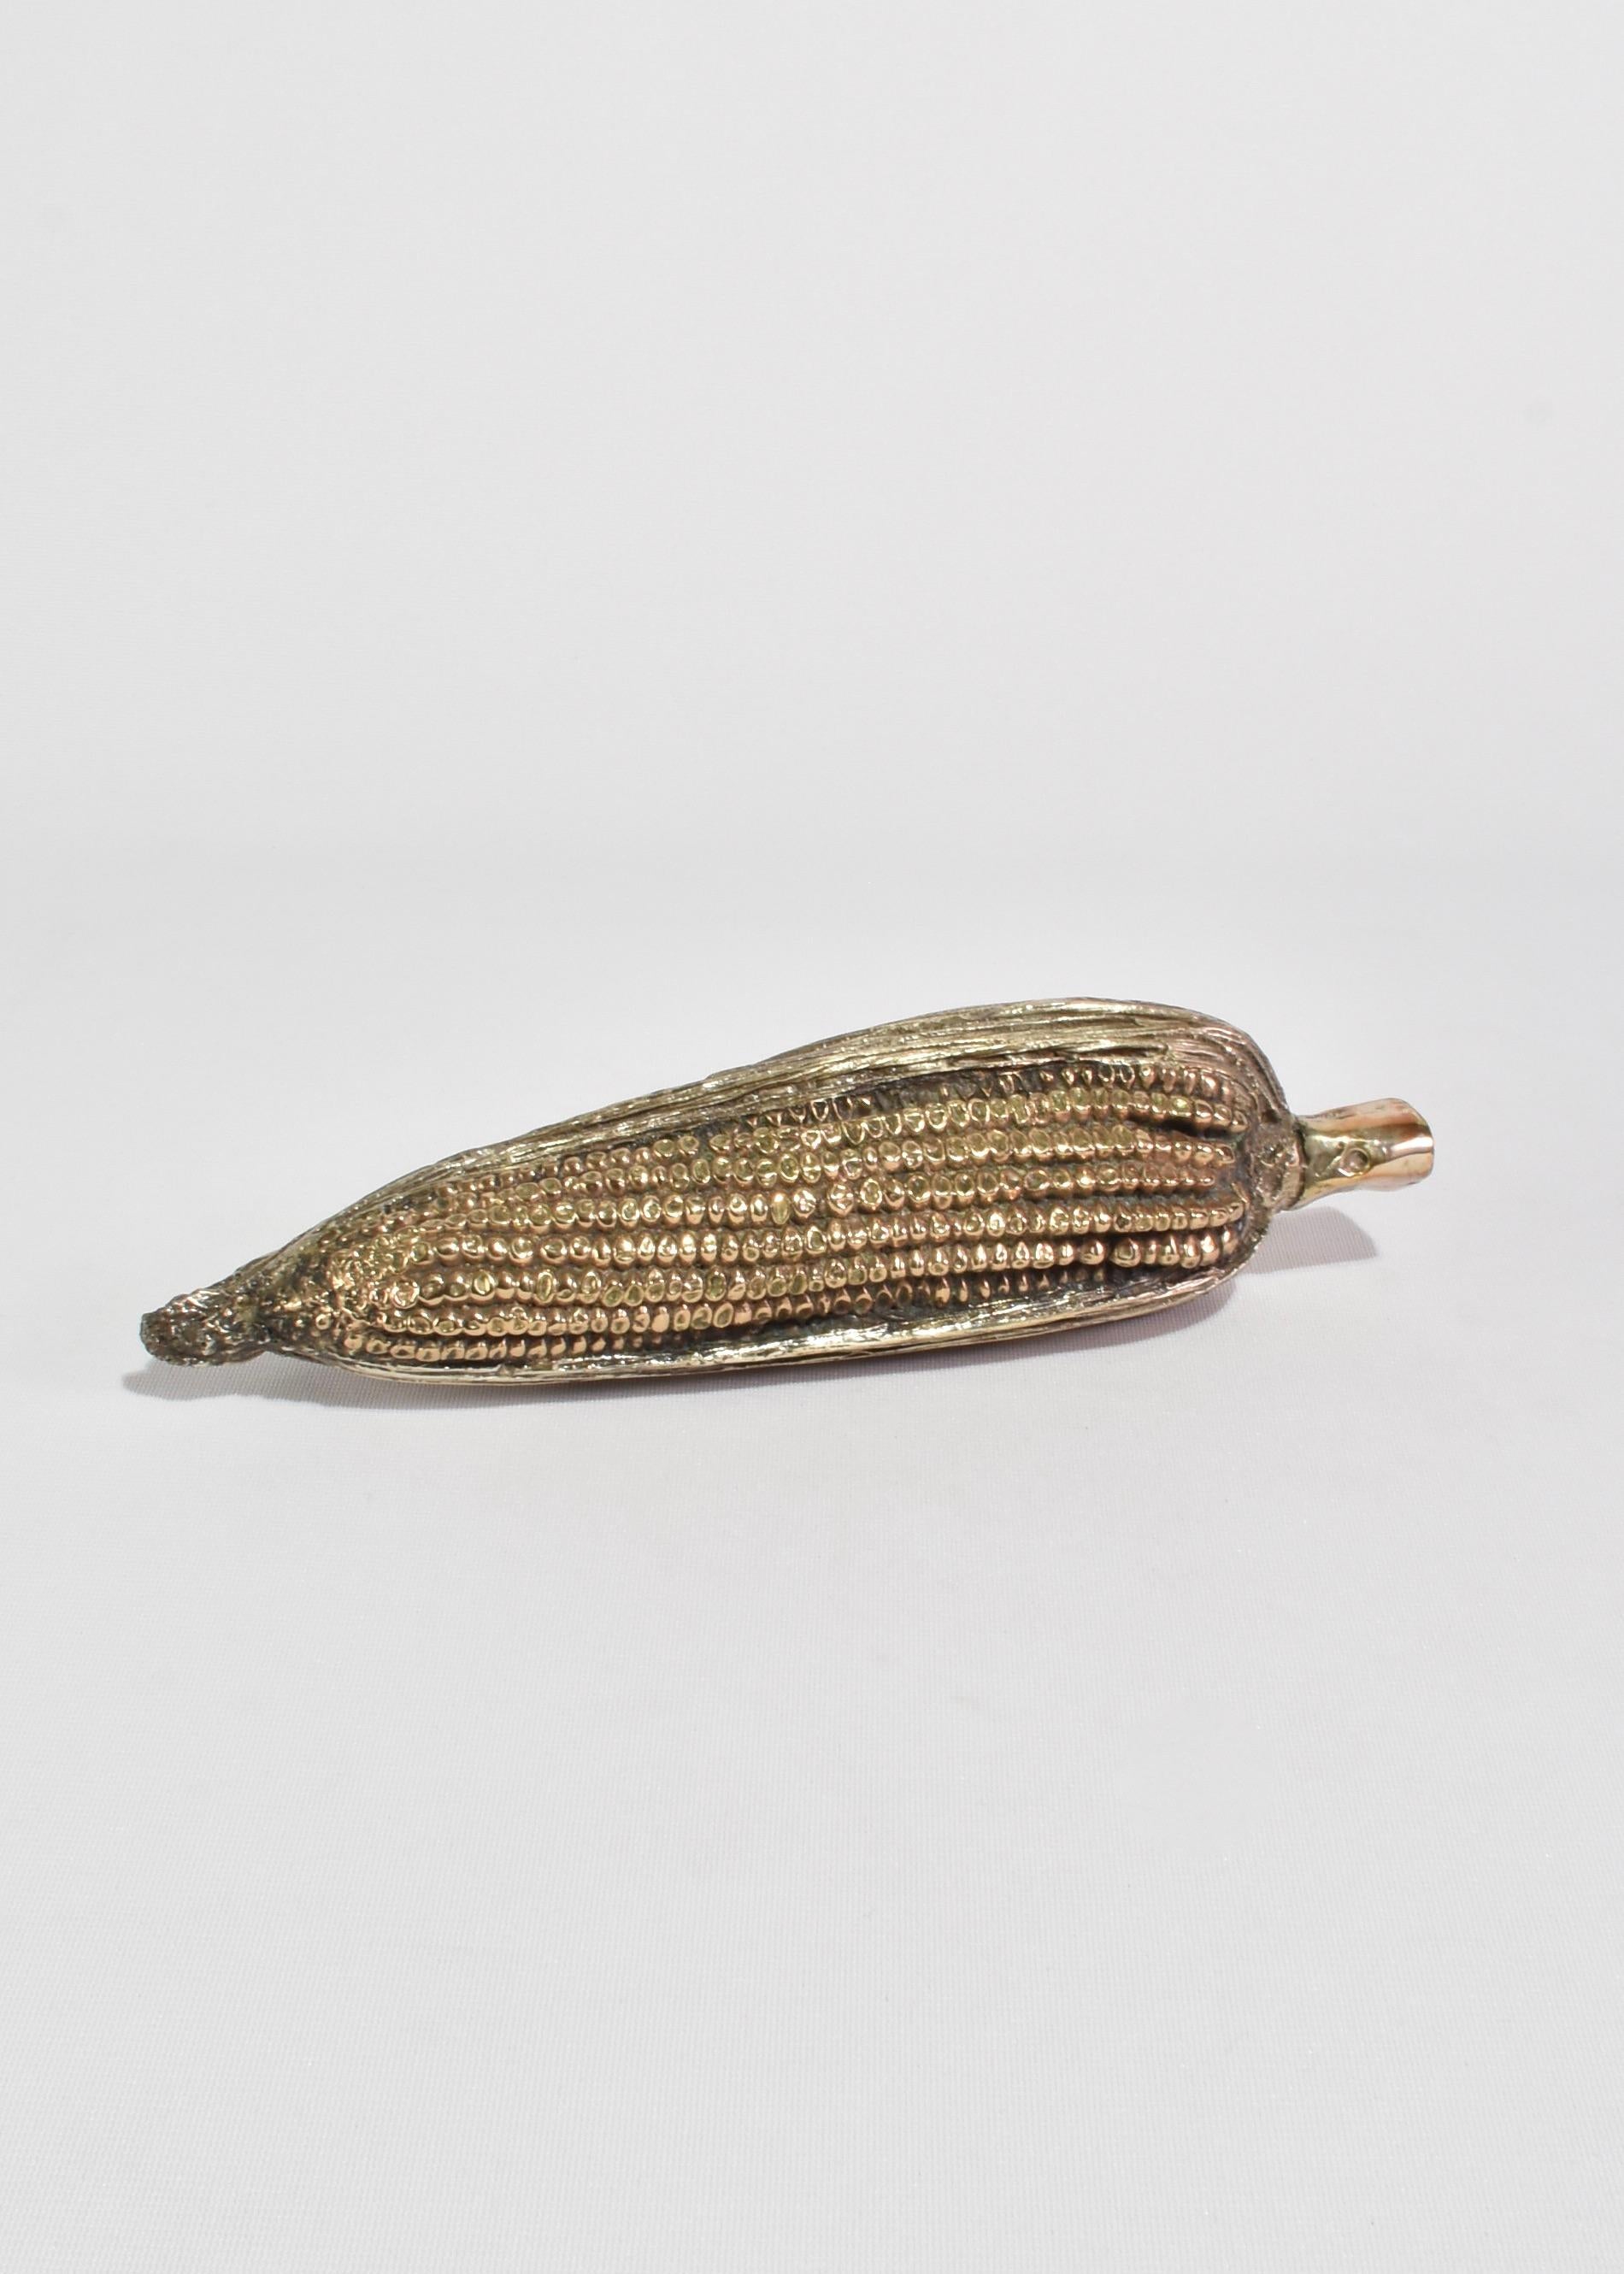 Cast Corn Sculpture For Sale